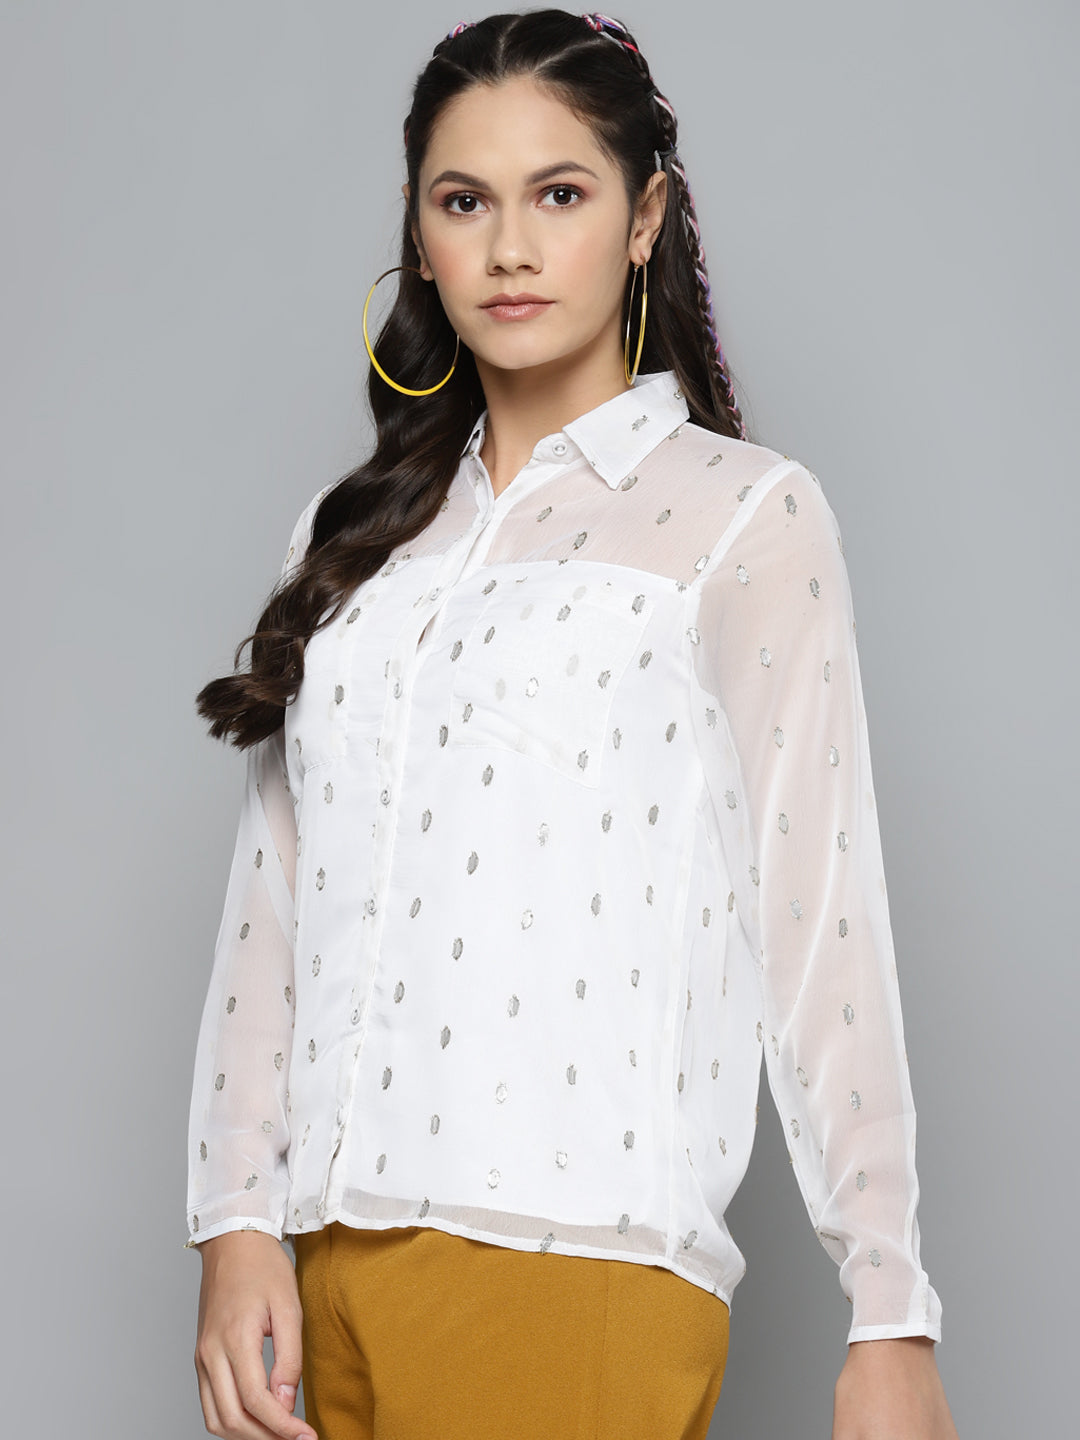 Buy Women White Lurex Sheer Shirt Online At Best Price 